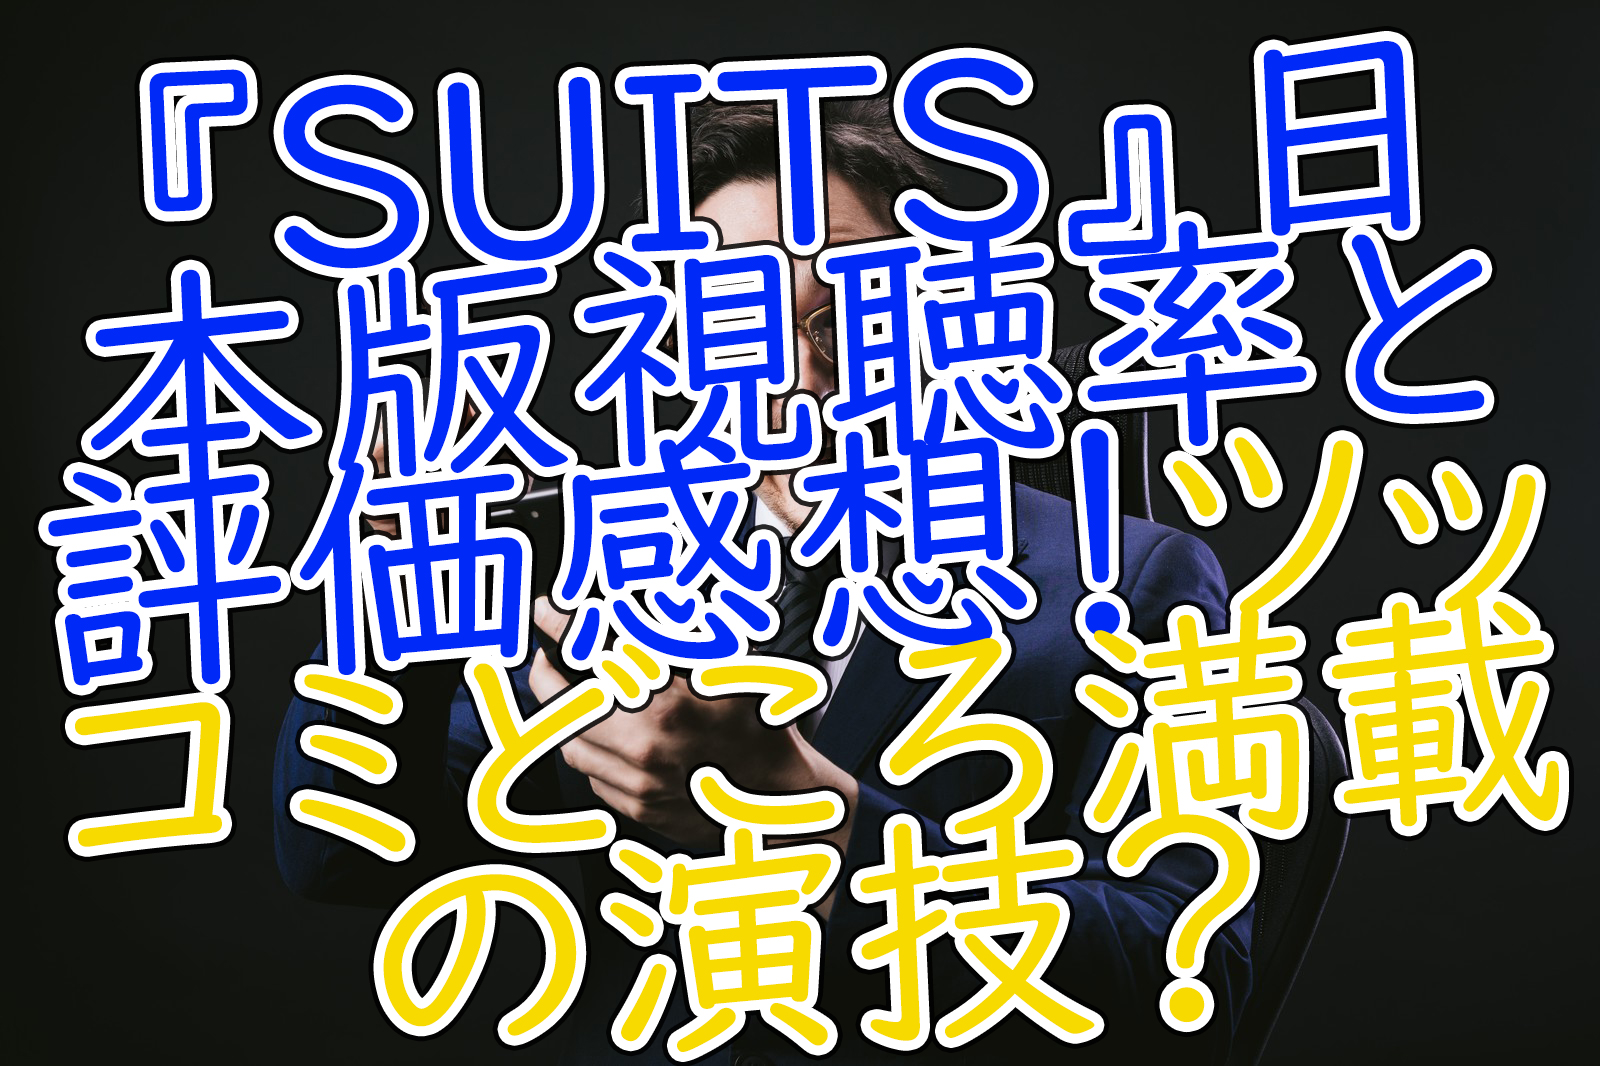 Suits 日本版視聴率と評価感想 ツッコミどころ満載の演技 うさぎのカクカク情報局